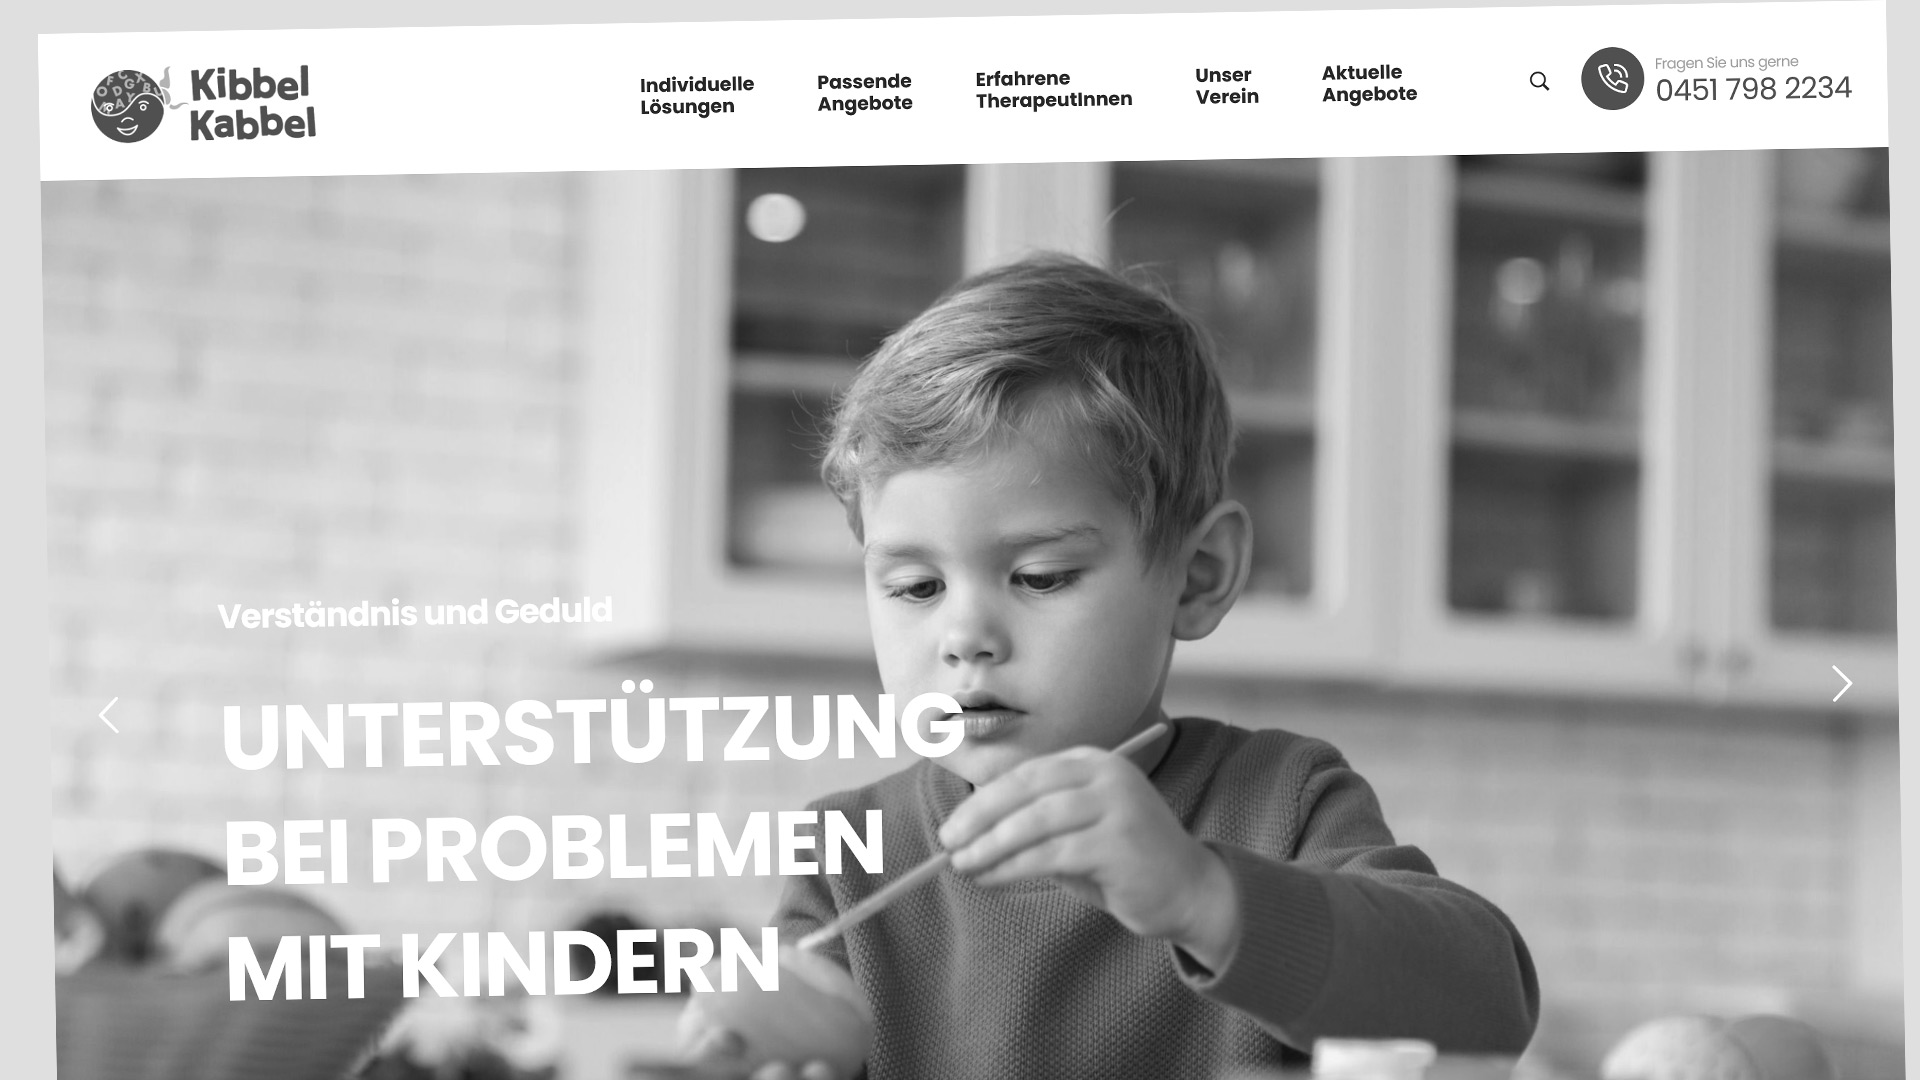 Verein zur Förderung der Wahrnehmungs- und Lernfähigkeit
von Kindern e.V. in Lübeck